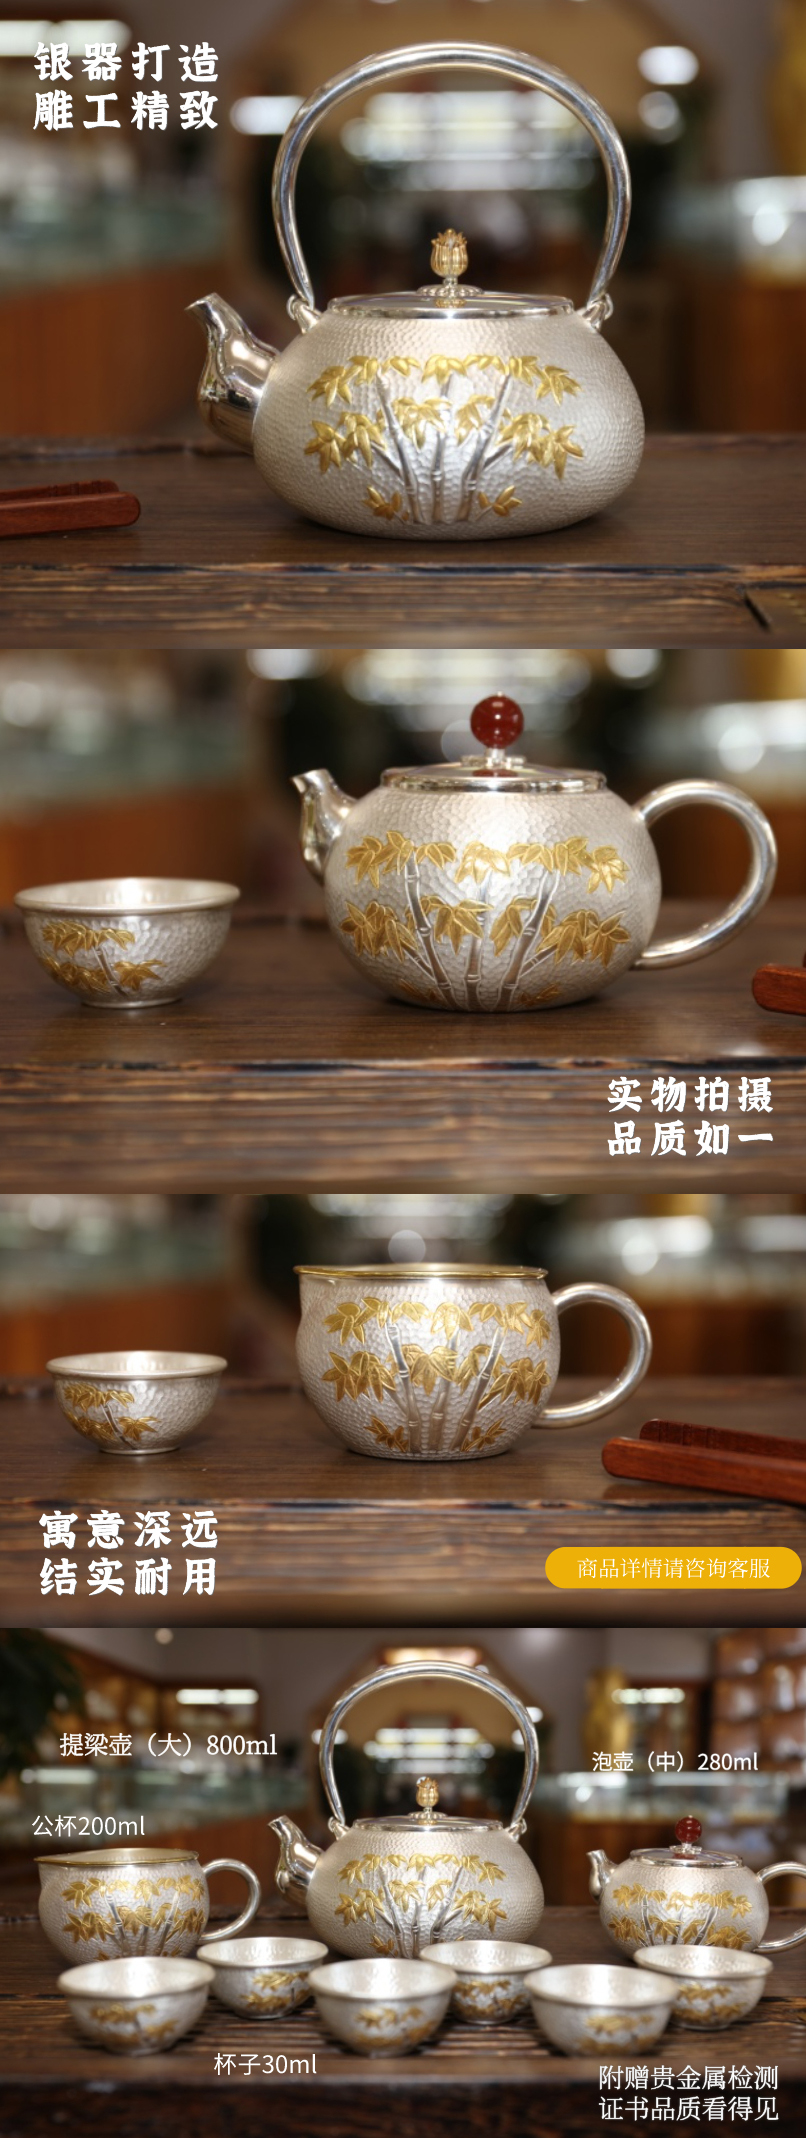 节节高银制茶具系列 3.jpg